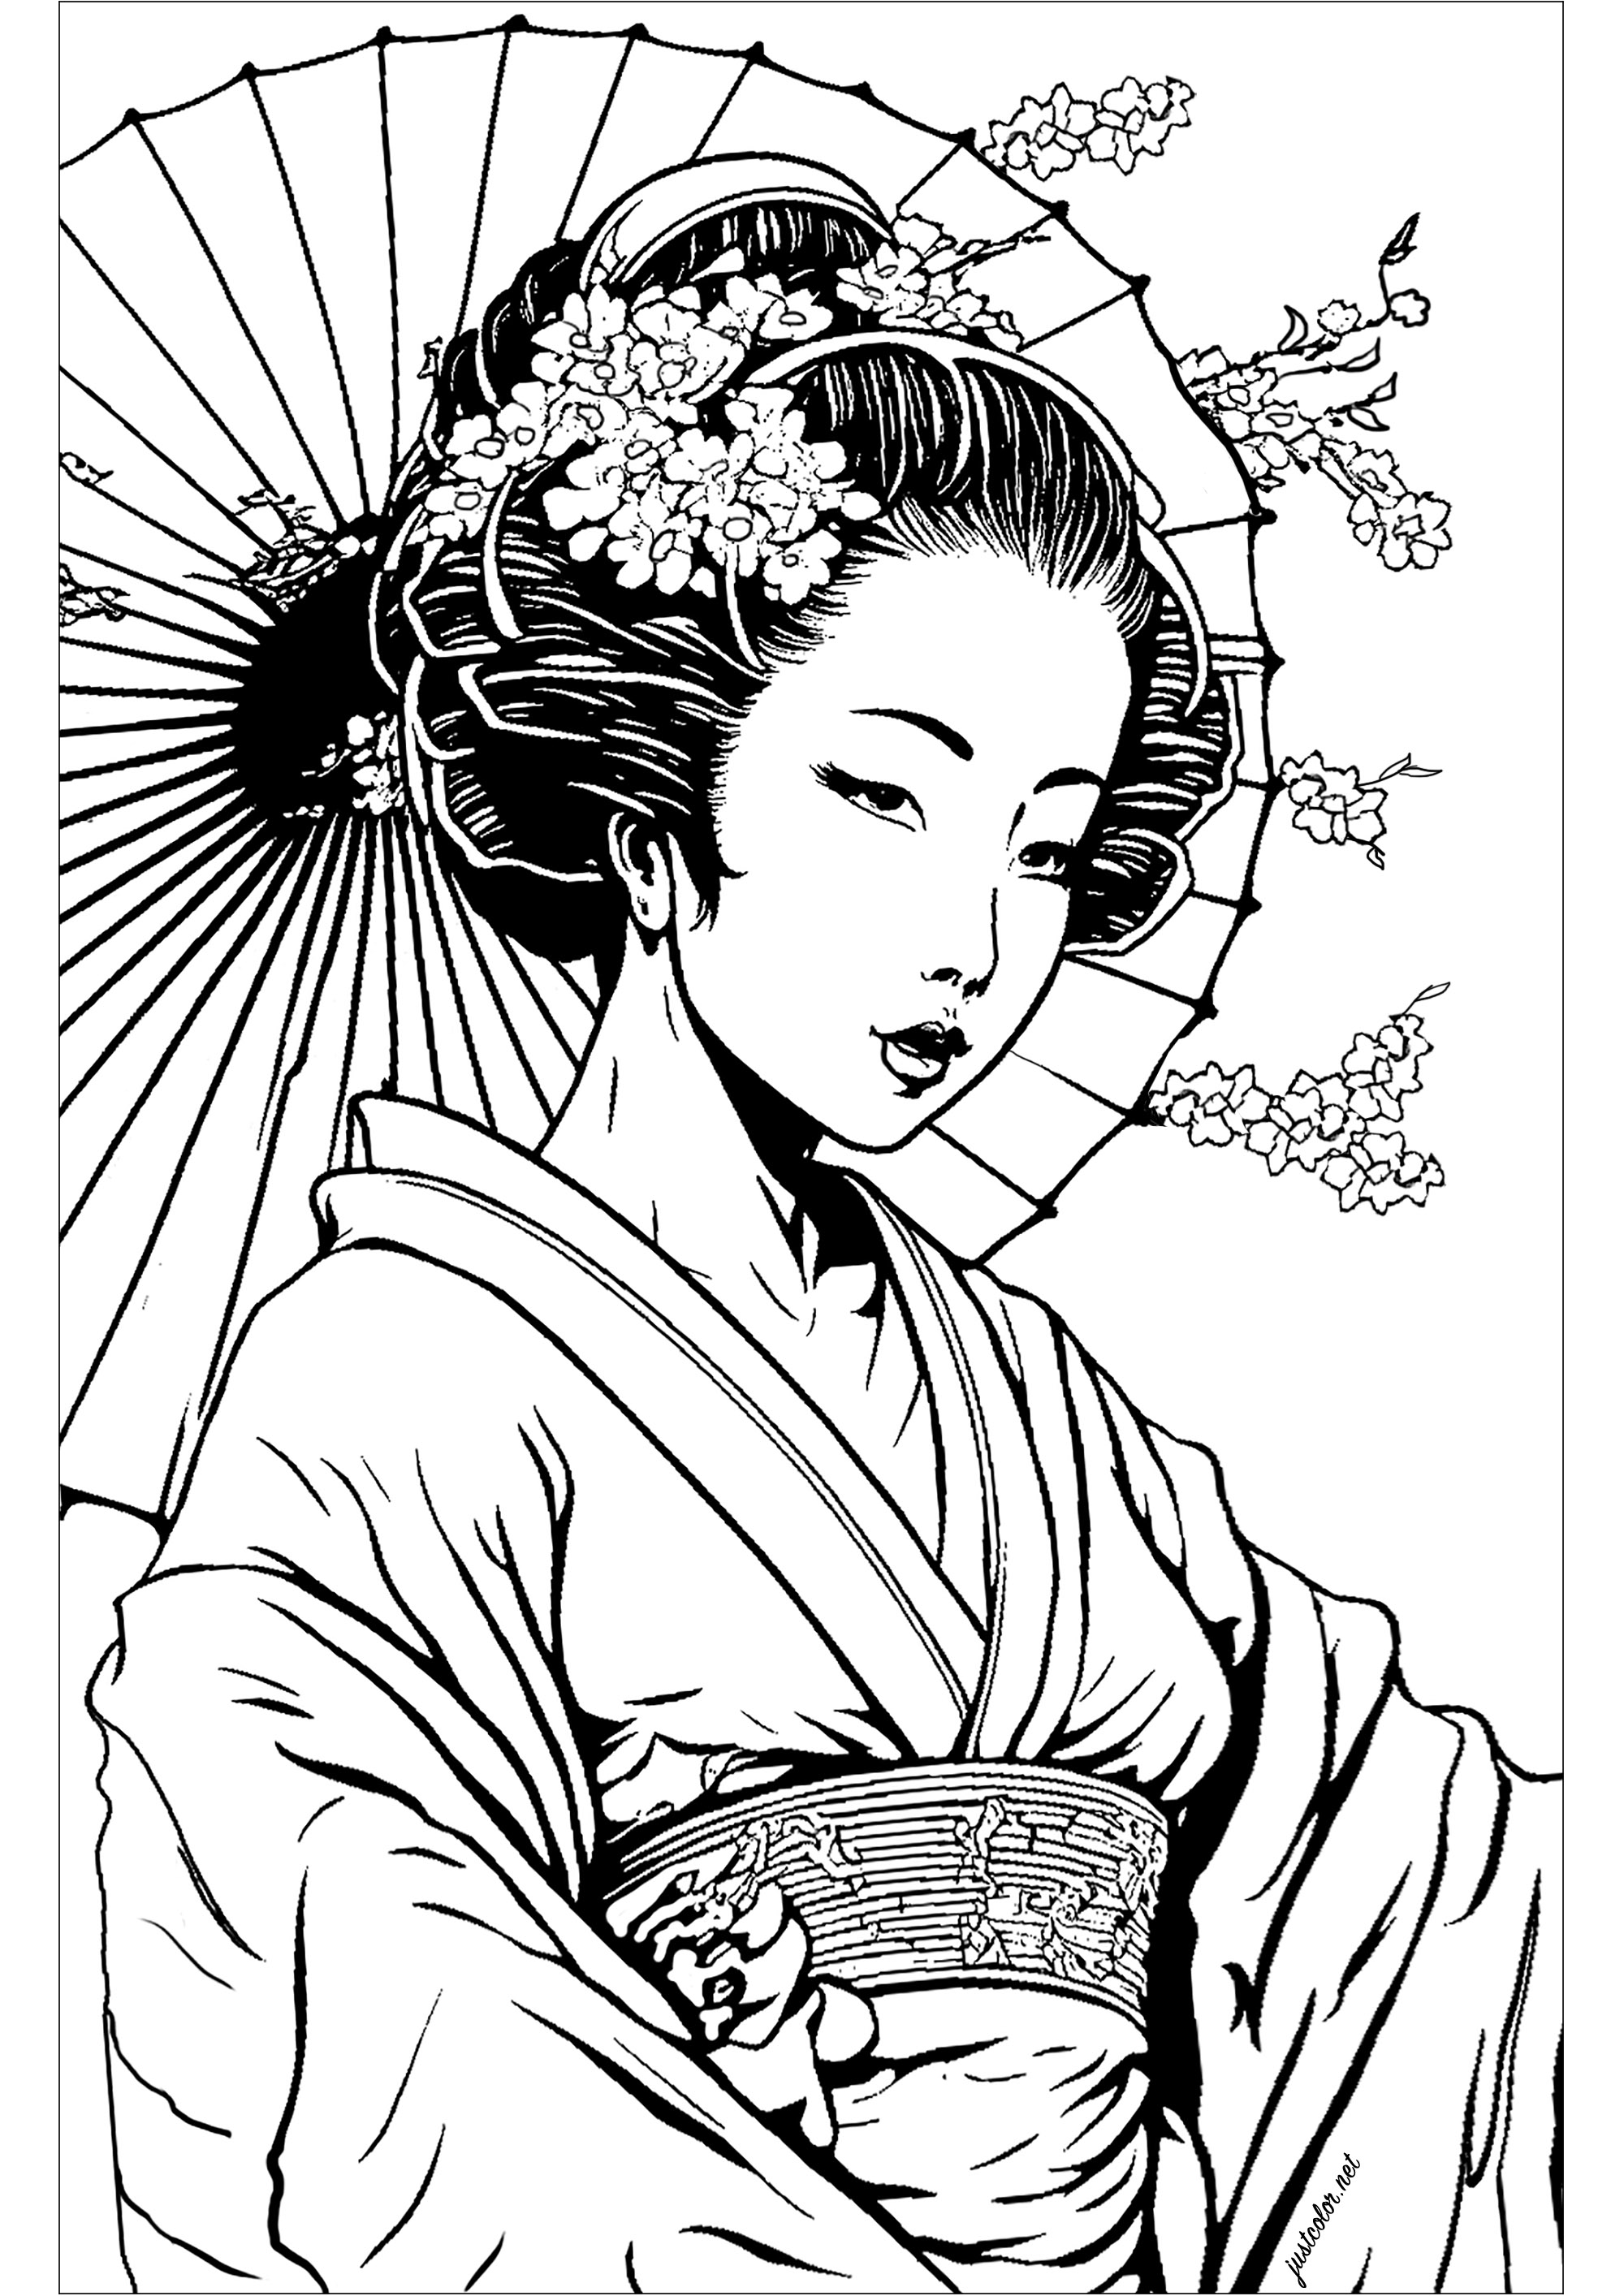 Bella geisha da colorare. La geisha è raffigurata in una posa classica, con un'espressione serena e benevola. La composizione è molto semplice, ma molto espressiva, e vi darà una sensazione di calma e relax.